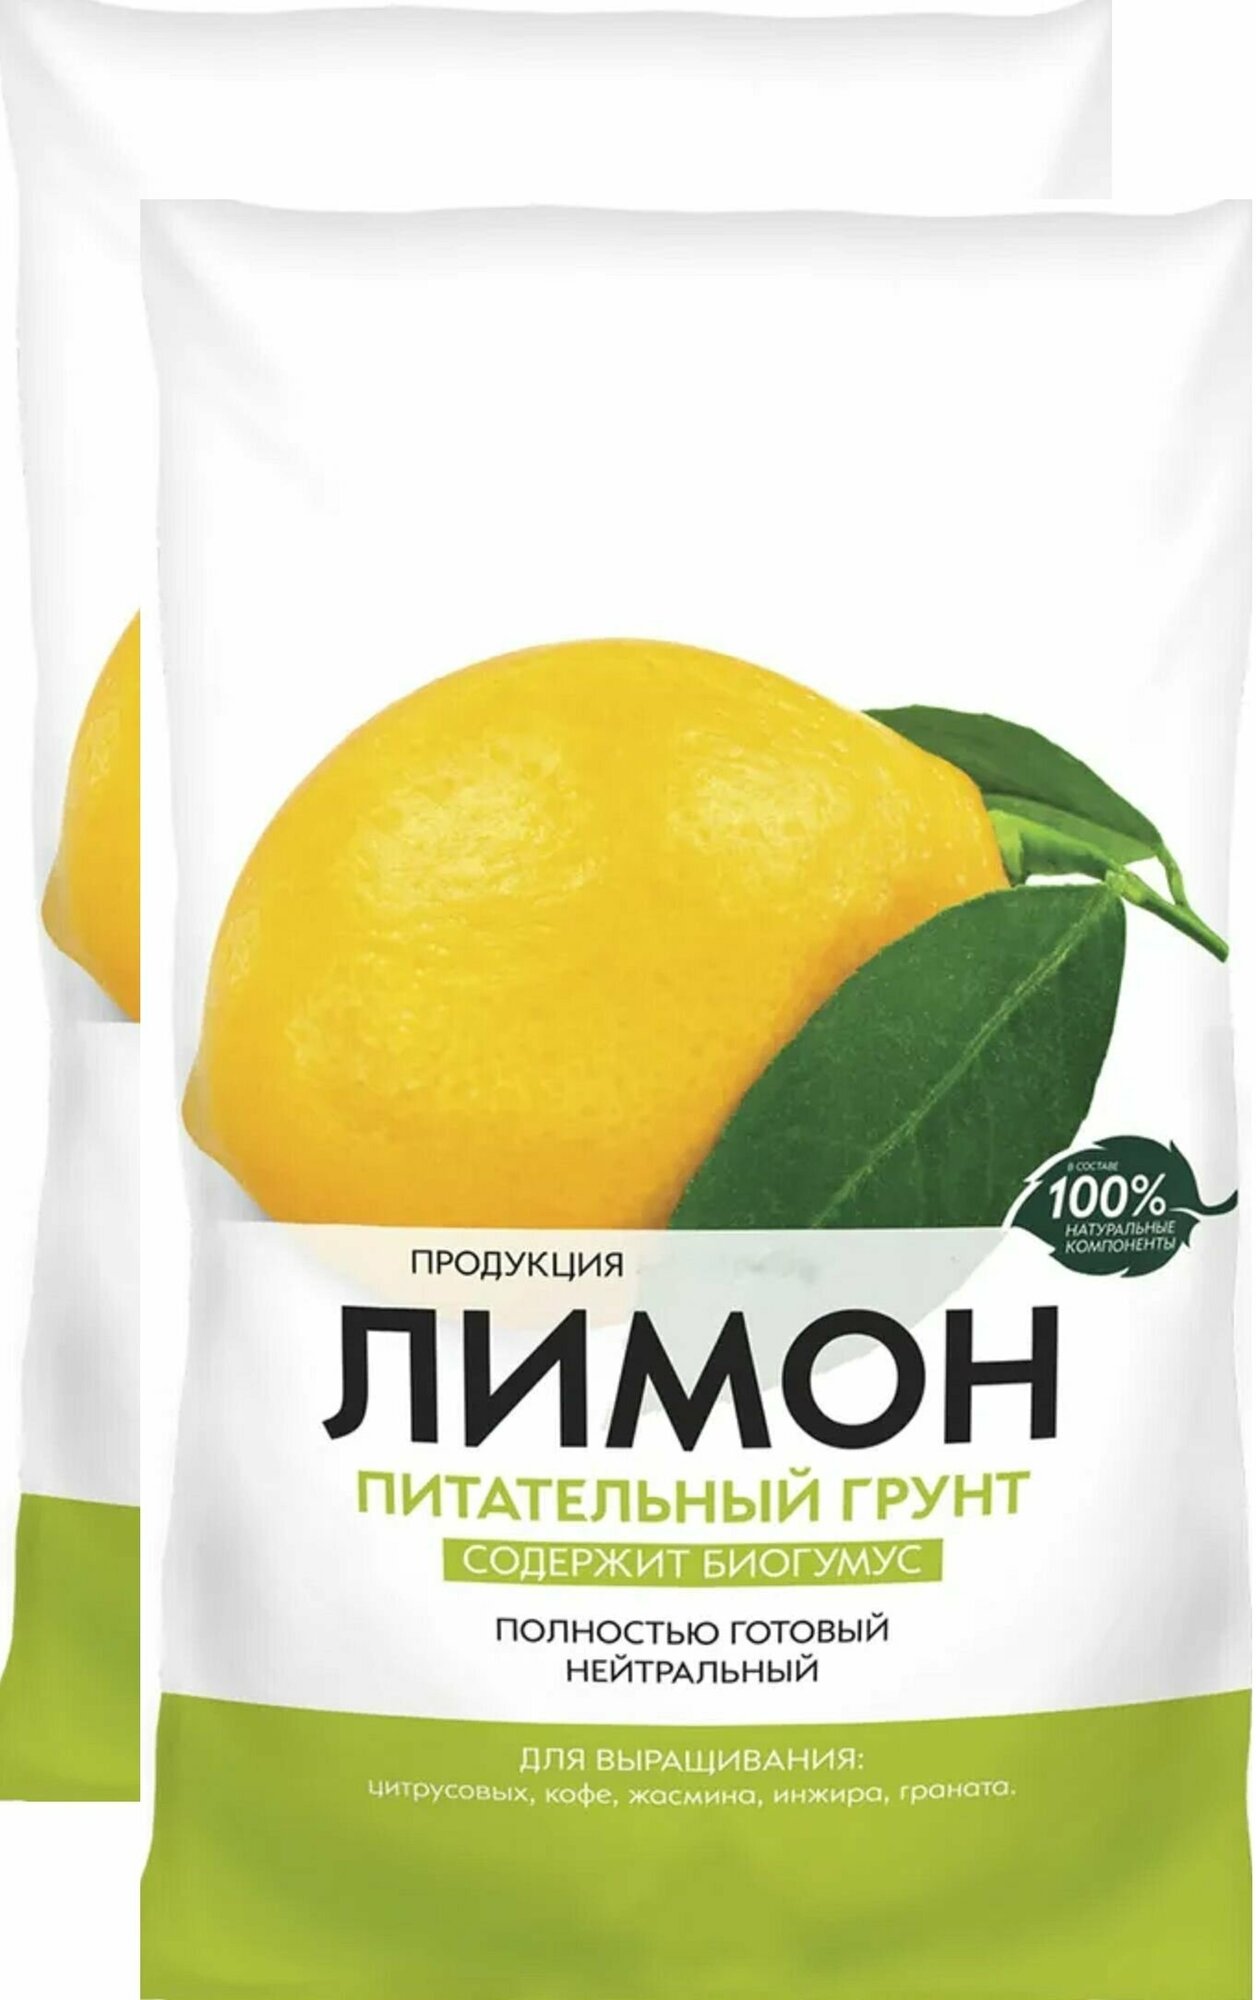 Почвогрунт "Лимон" 2шт х 2,5 л. Для выращивания цитрусовых, кофе, жасмина и граната в домашних условиях, создает условия для роста и развития растений